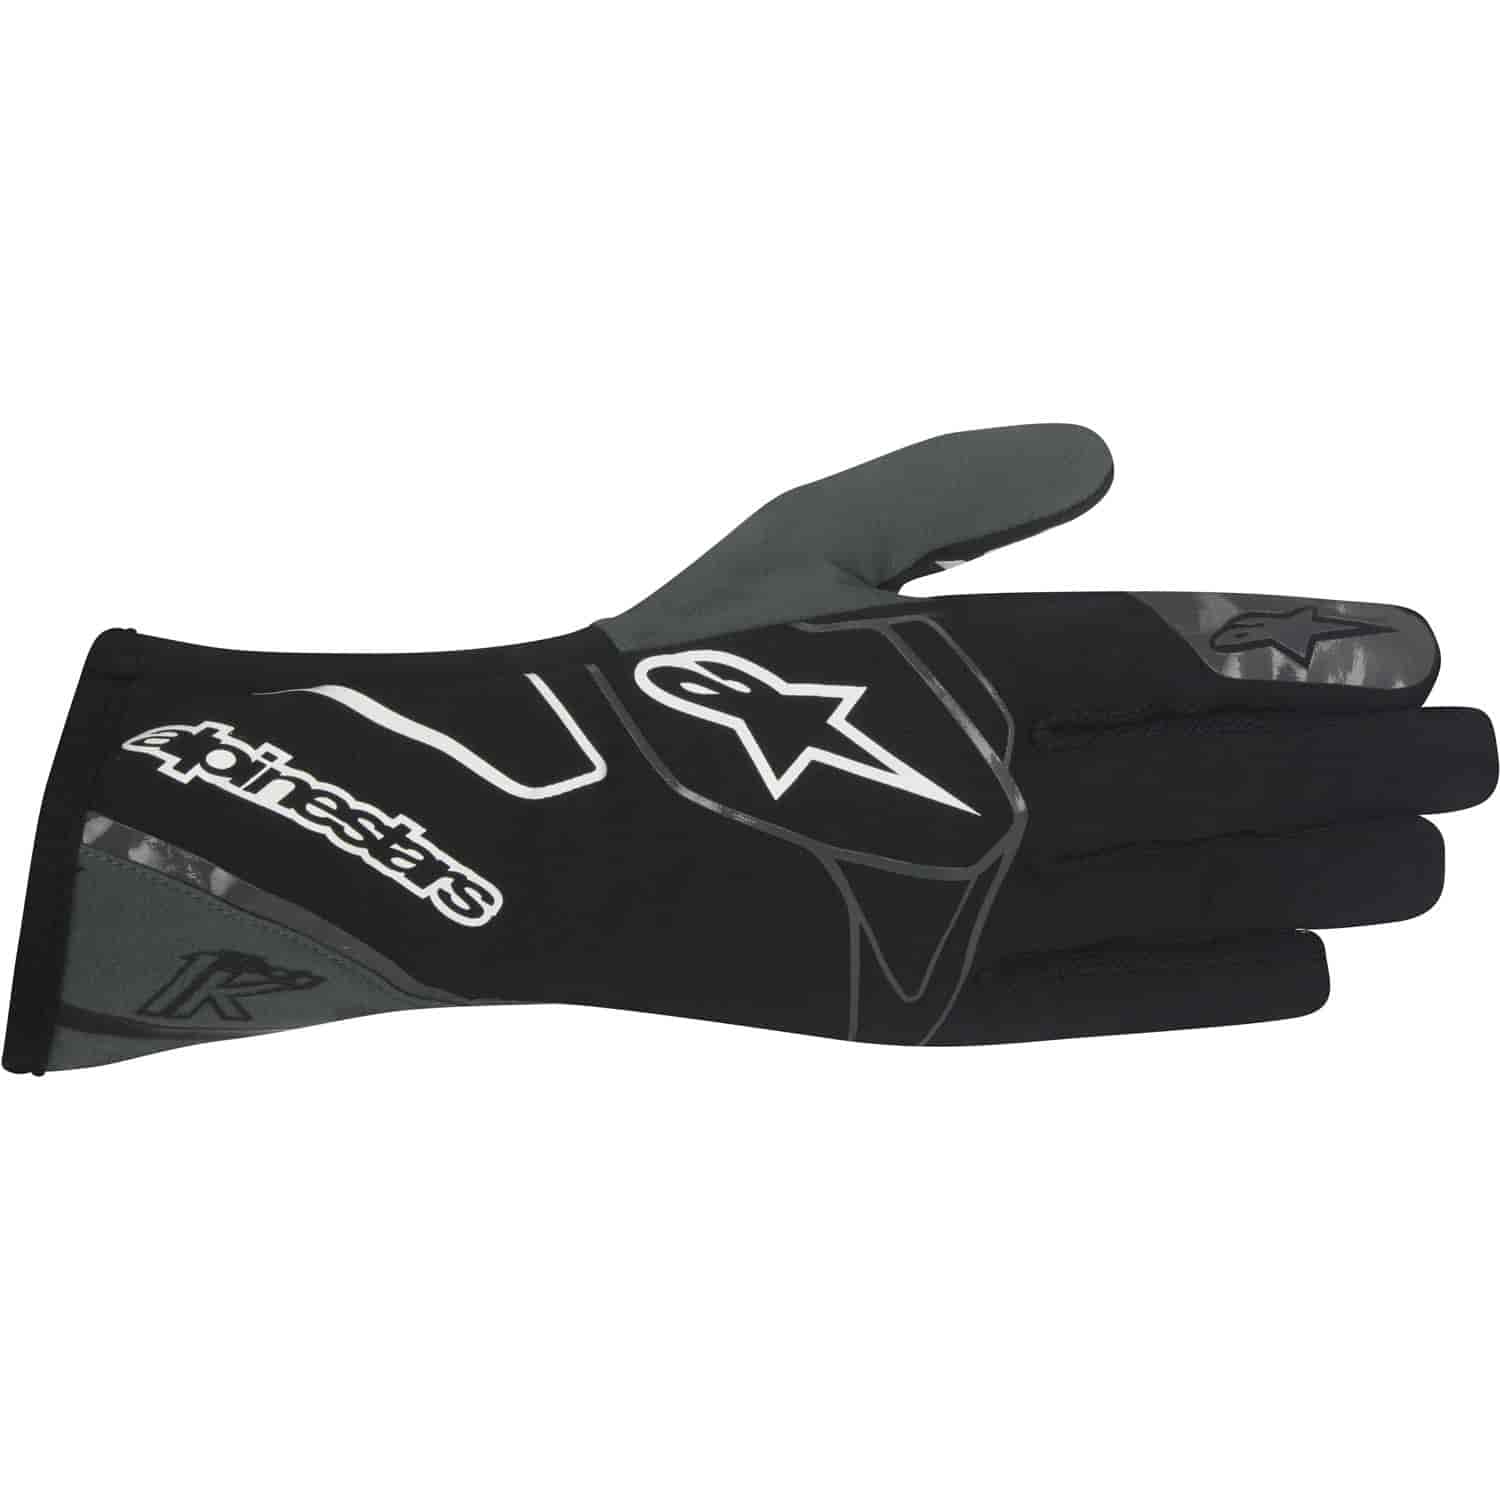 Tech 1-K Gloves Black/Anthracite/White